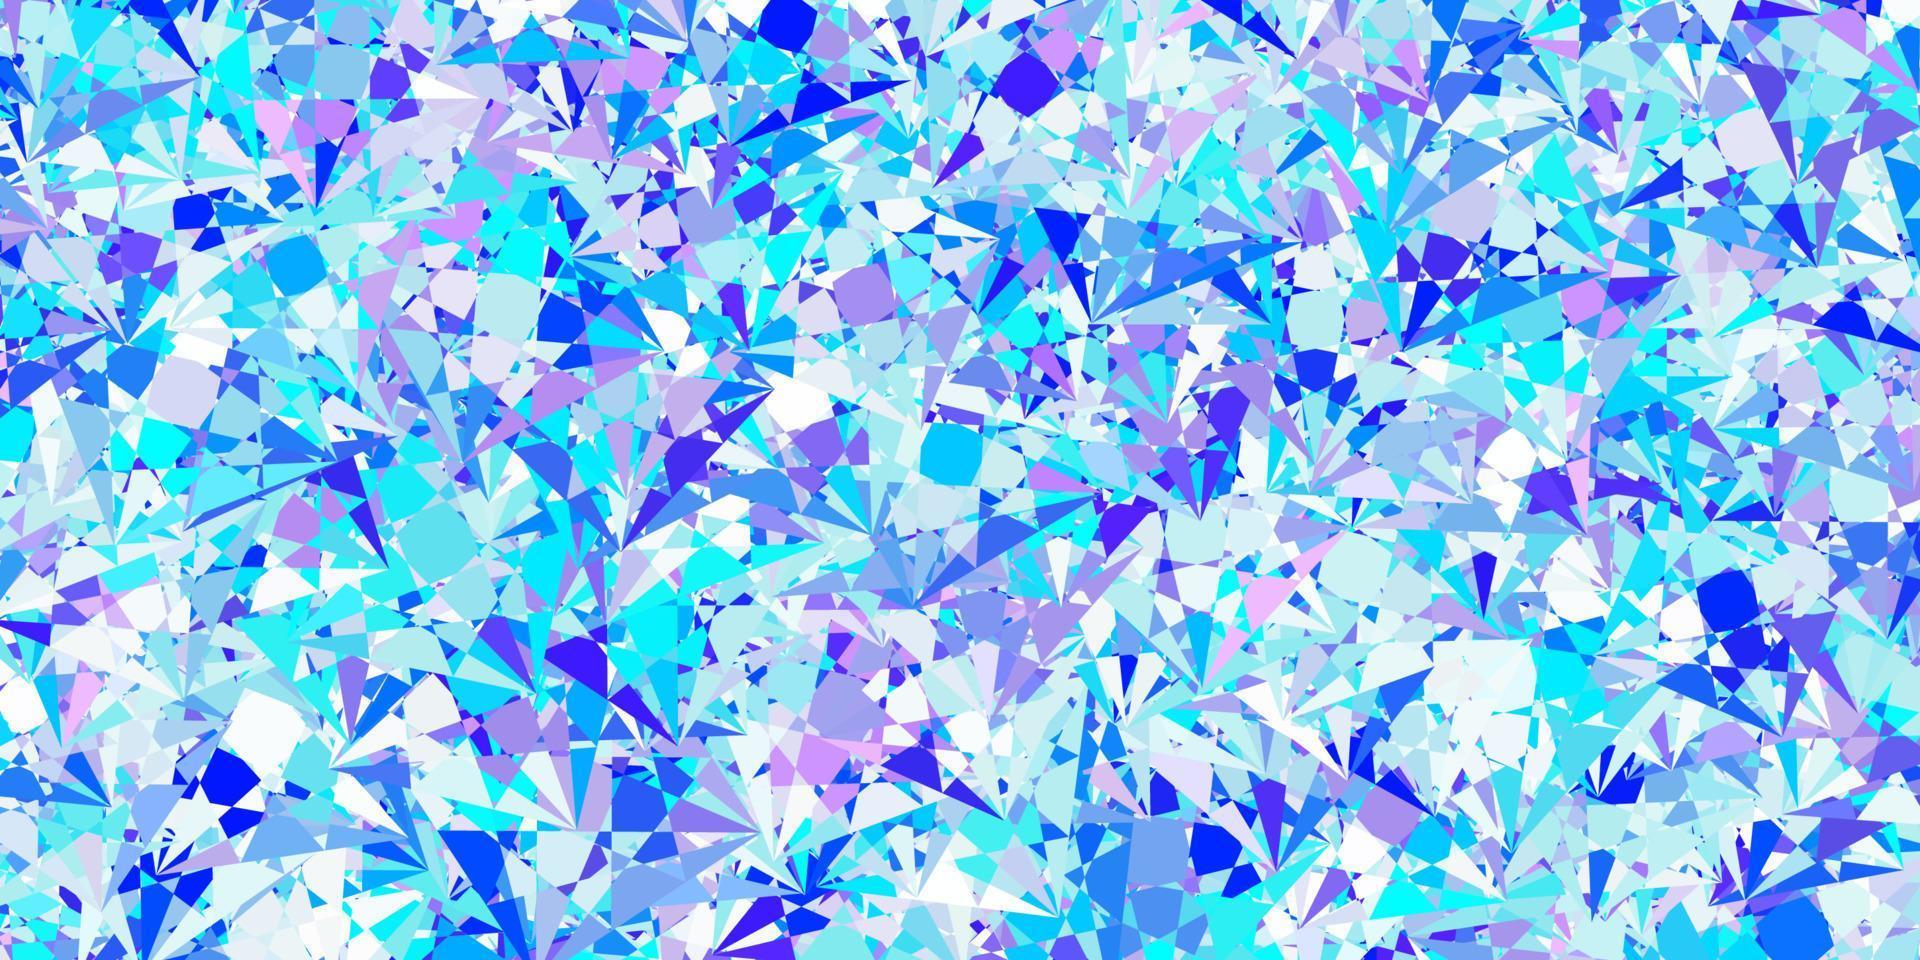 hellrosa, blaue Vektortextur mit zufälligen Dreiecken. vektor